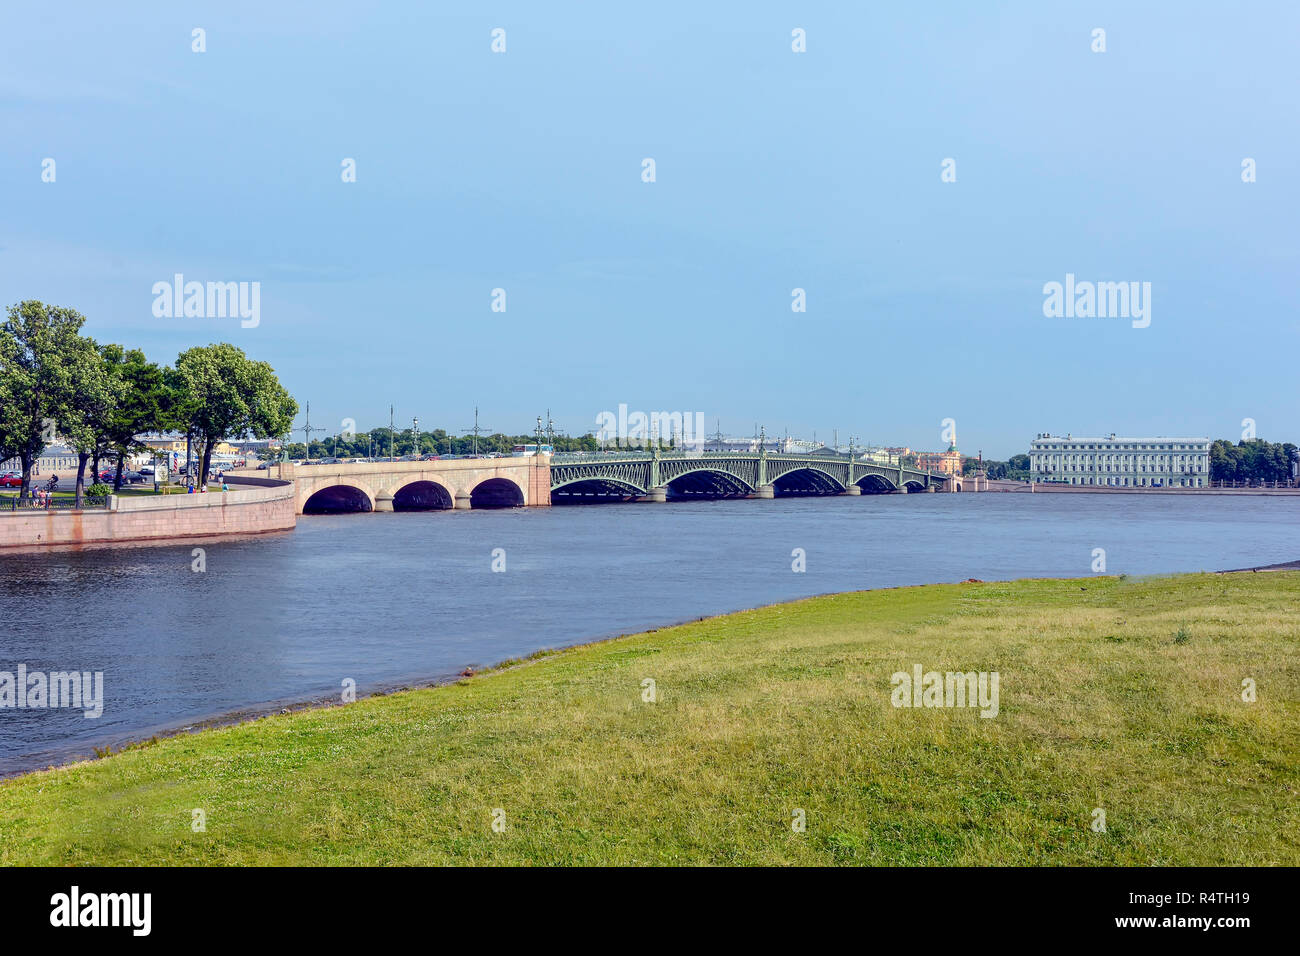 Vista della città vecchia di San Pietroburgo con la sua architettura sulle rive del fiume Neva Foto Stock